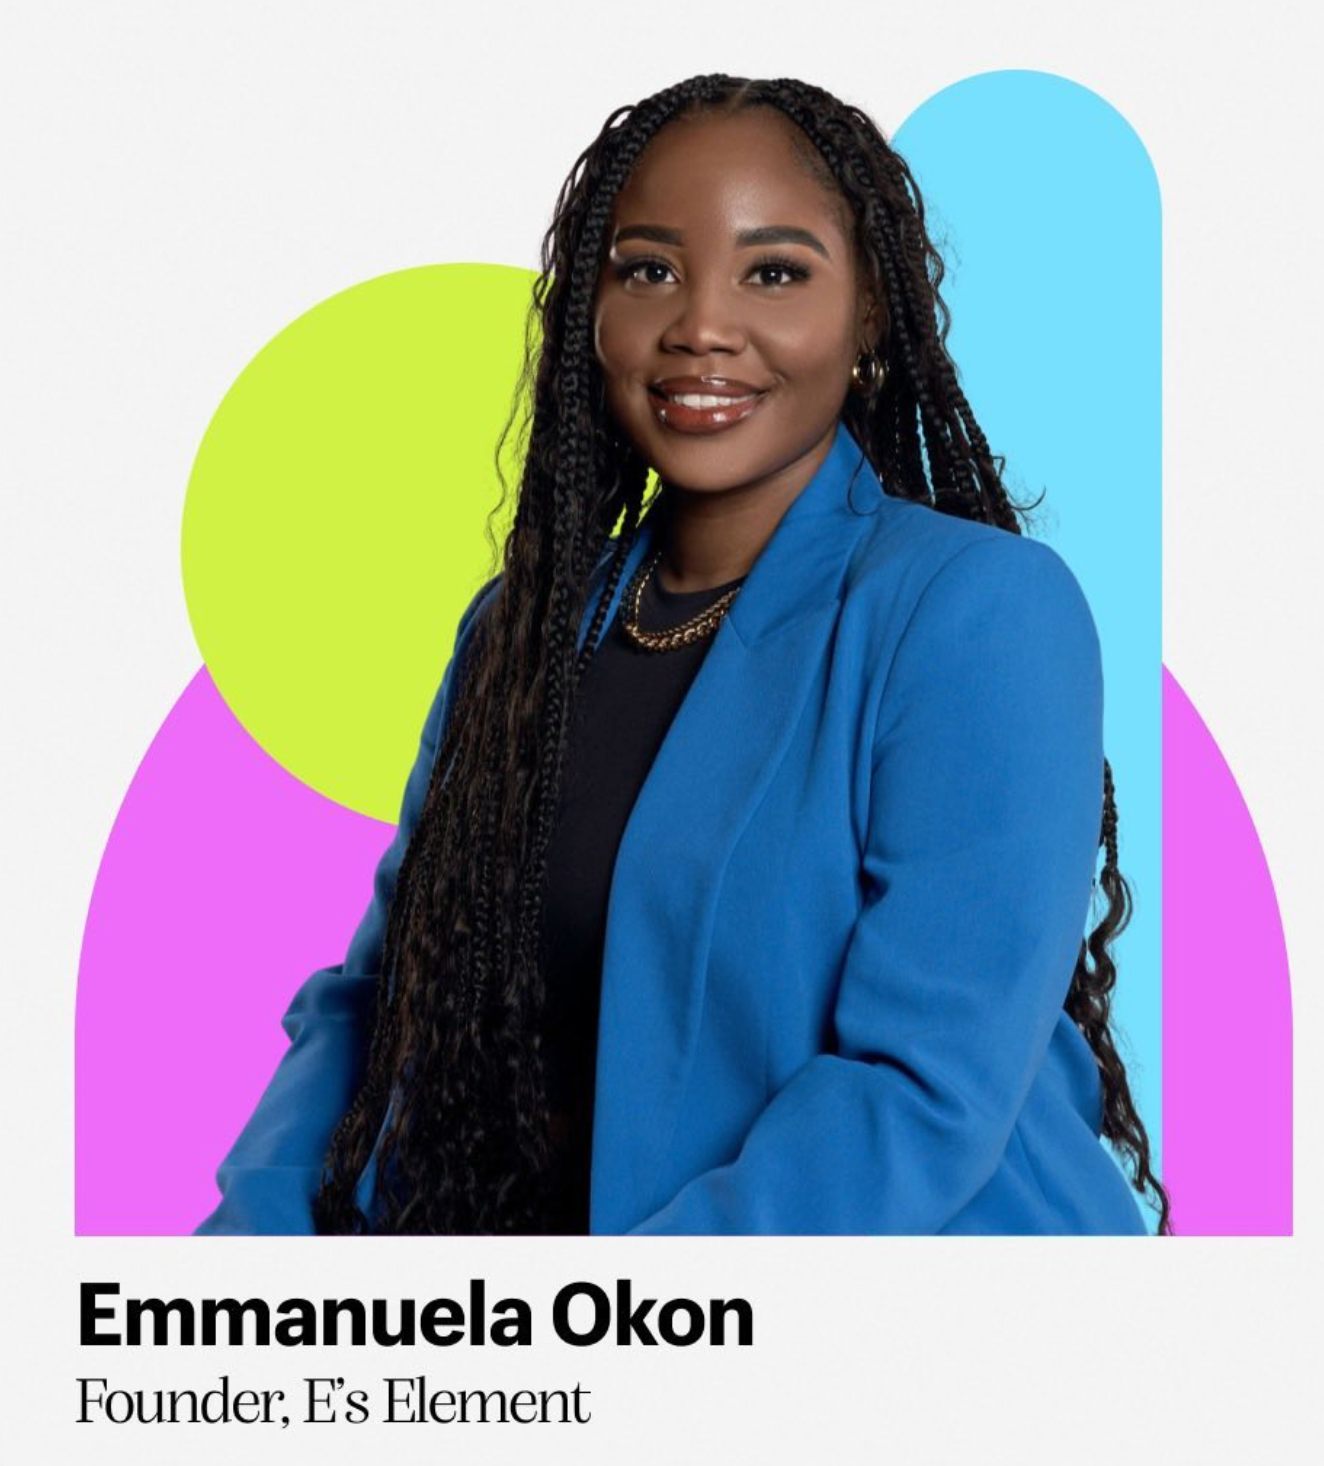 founder of e's element, Emmanuela Okon, 